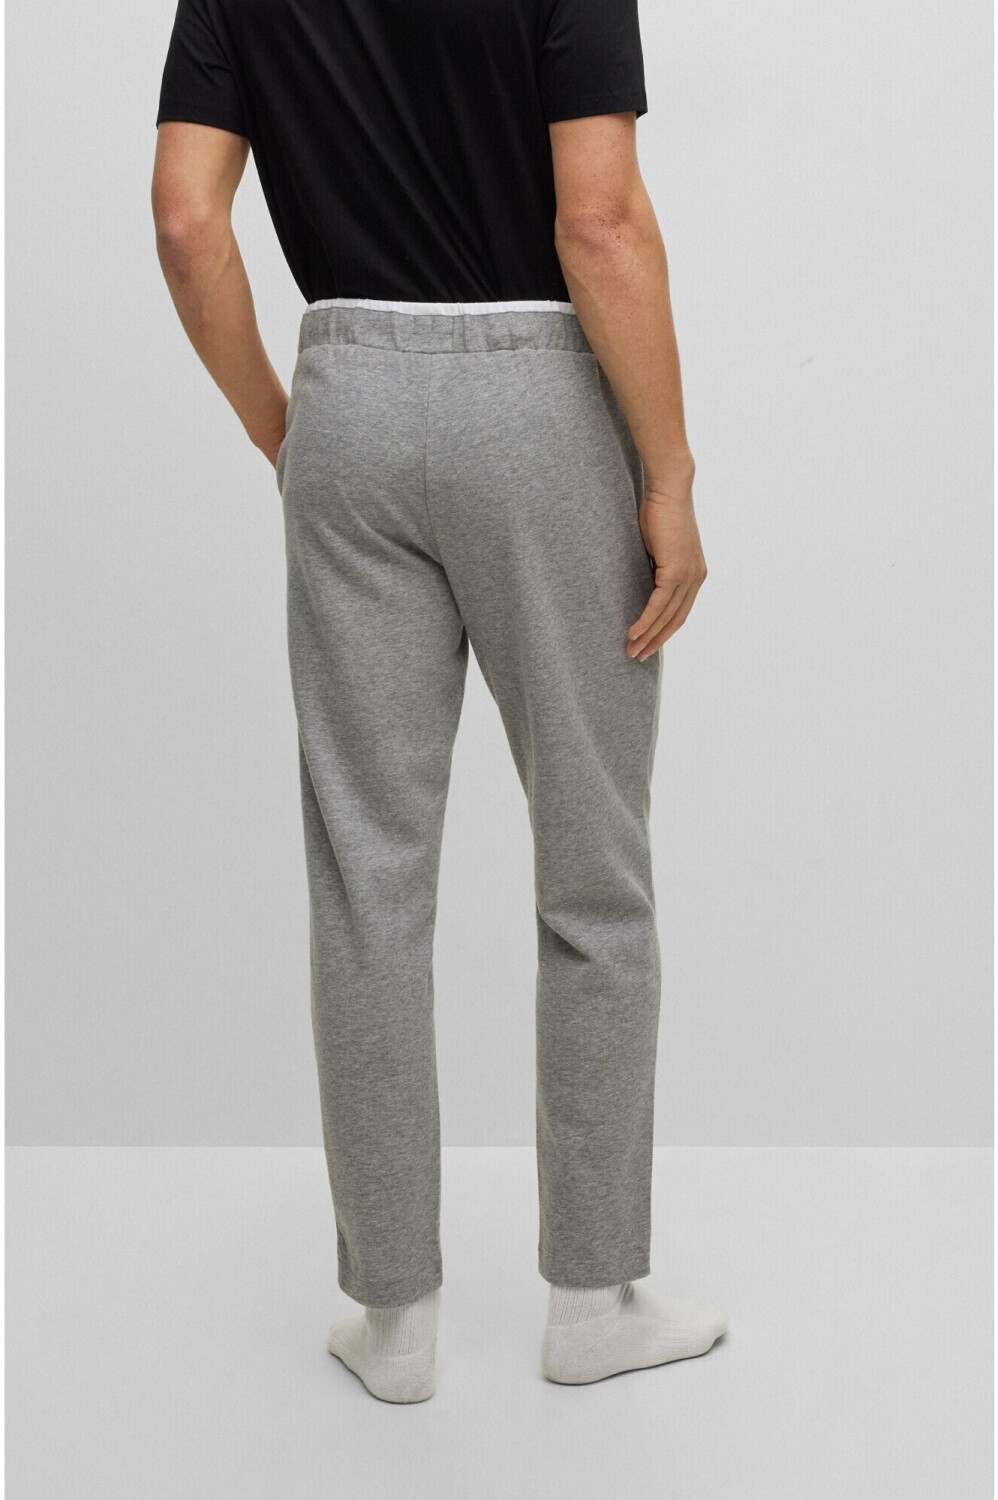 Hugo Boss Cashmere Pants (50485961-033) grey ab 113,52 € | Preisvergleich  bei